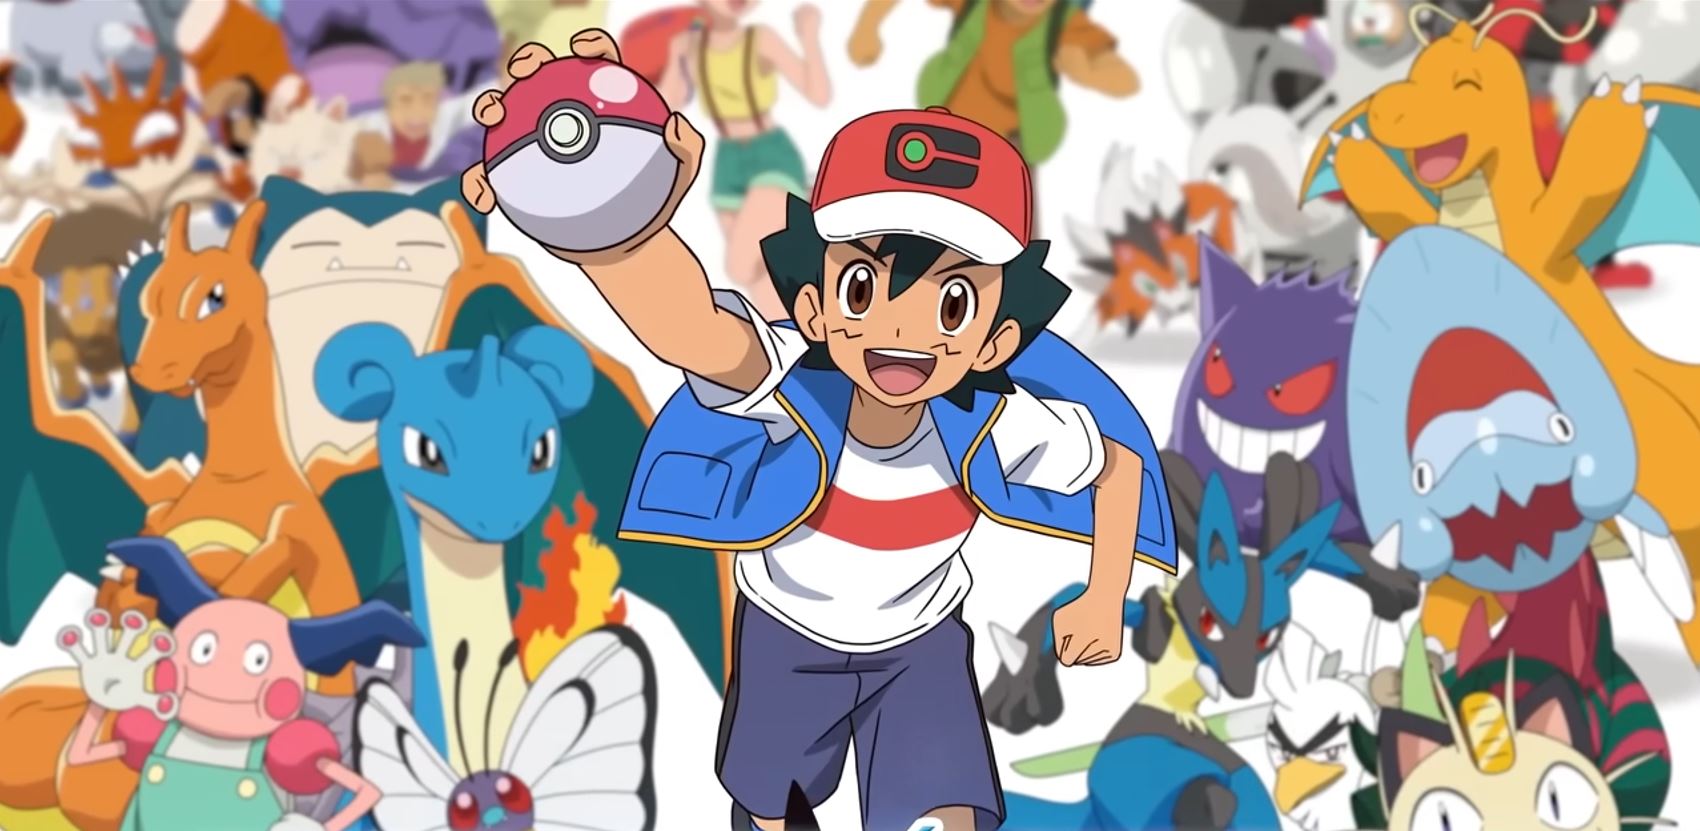 Pokémon Concierge': Teaser, plataforma de streaming, estúdio de animação e  tudo o que sabemos até agora